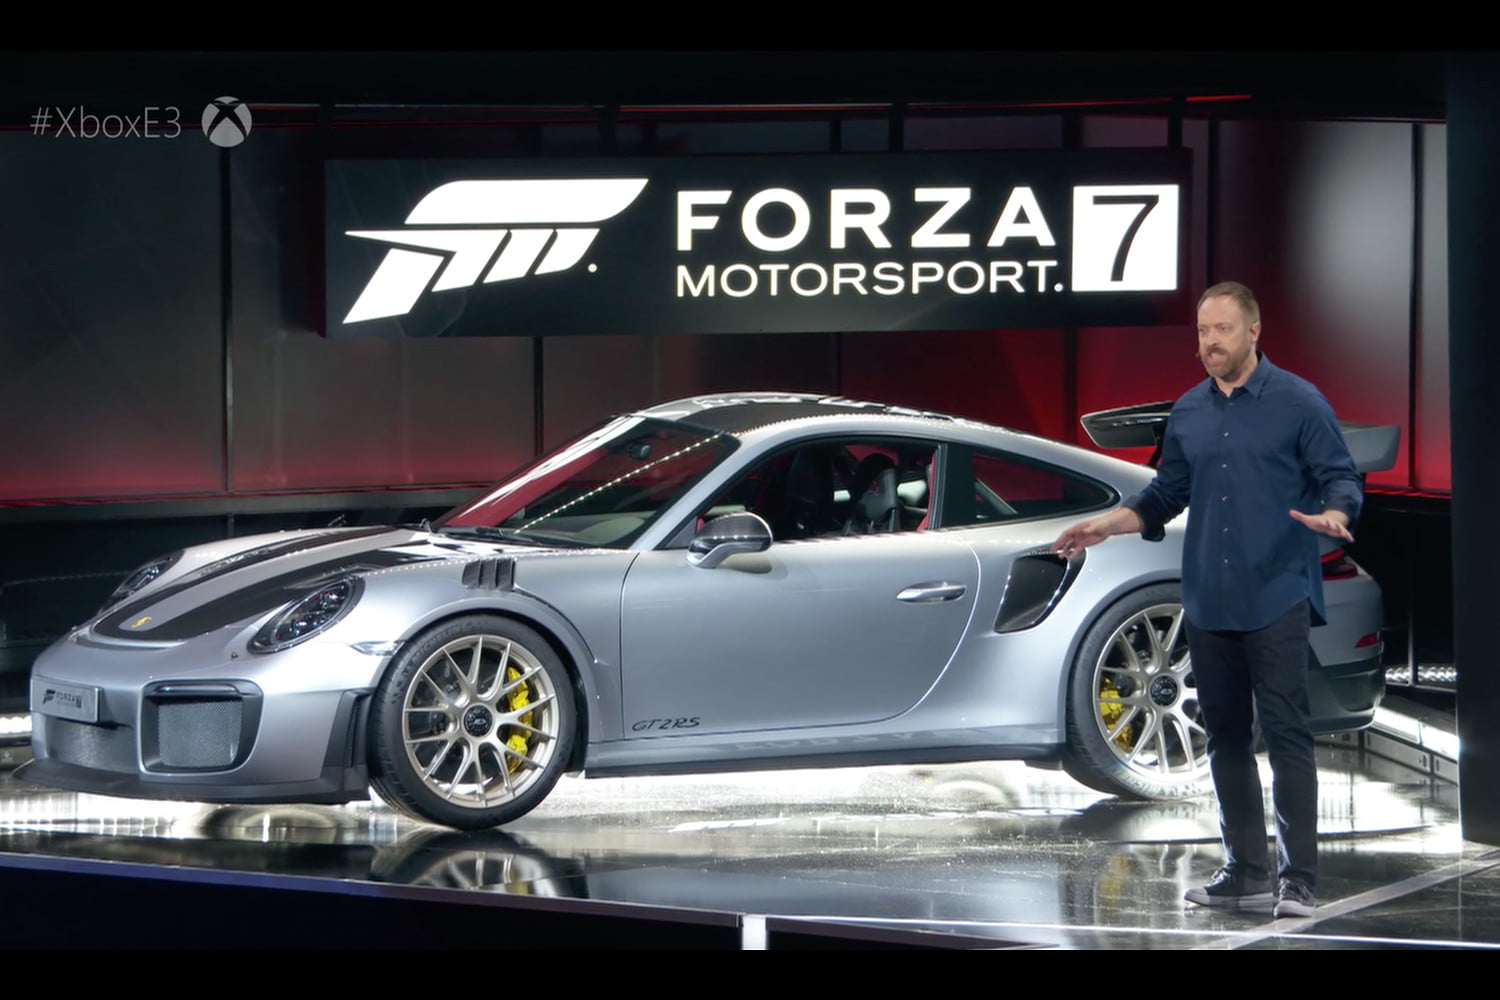 Forza Motorsport 7 icin yeni otomobil listesi belli oldu